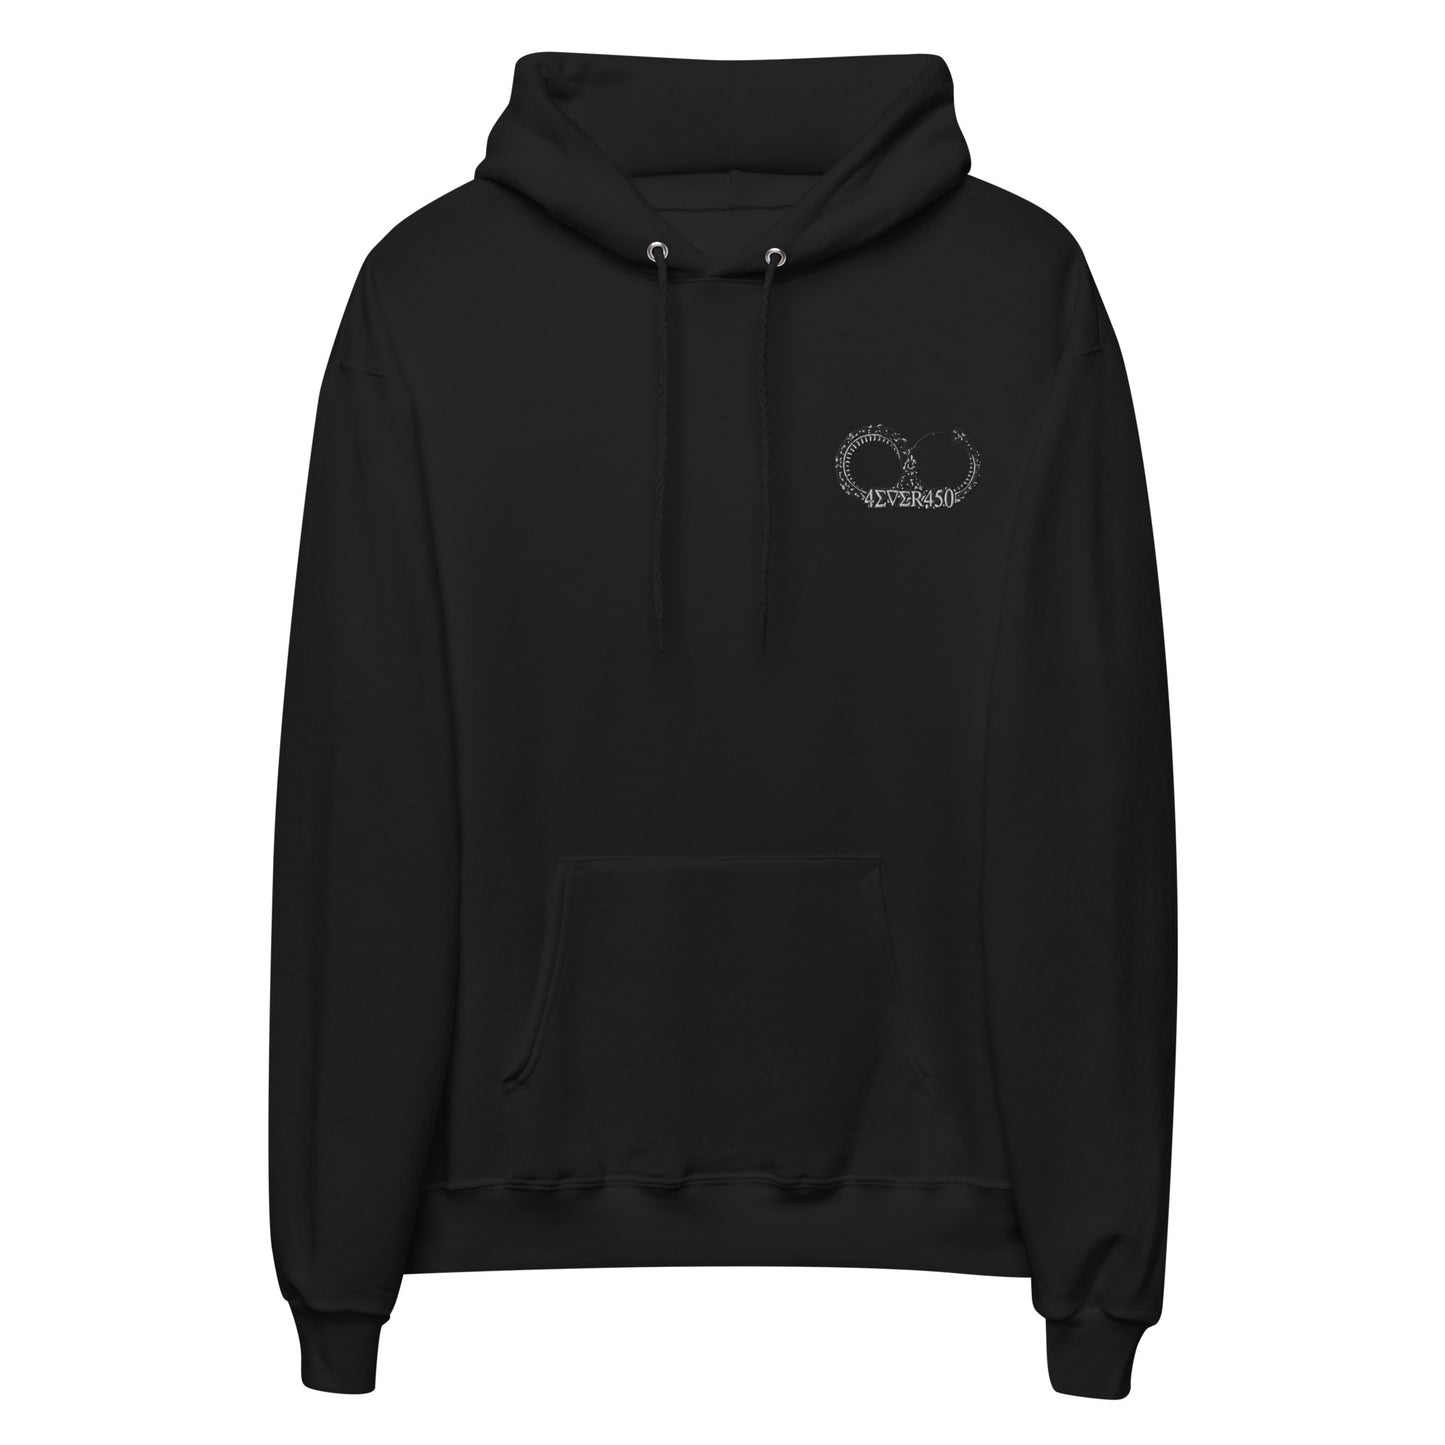 4Ever450 Unisex fleece hoodie - Iamdubeu